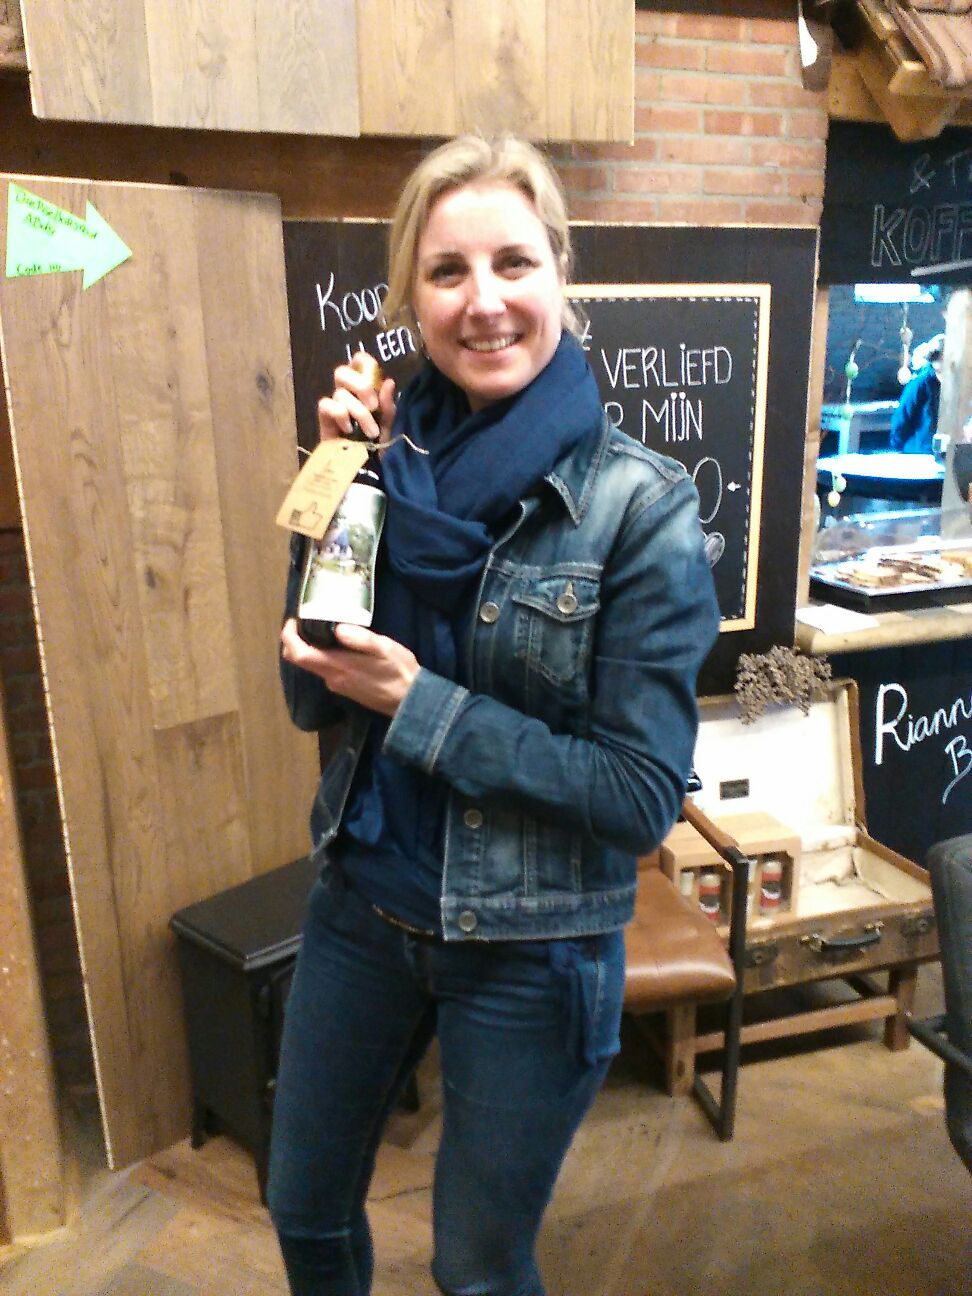 Fam Stavanuiter uit Monnickendam heeft een hele mooie lamel parket vloer gekocht en gaat naar huis met een lekker flesje wijn.